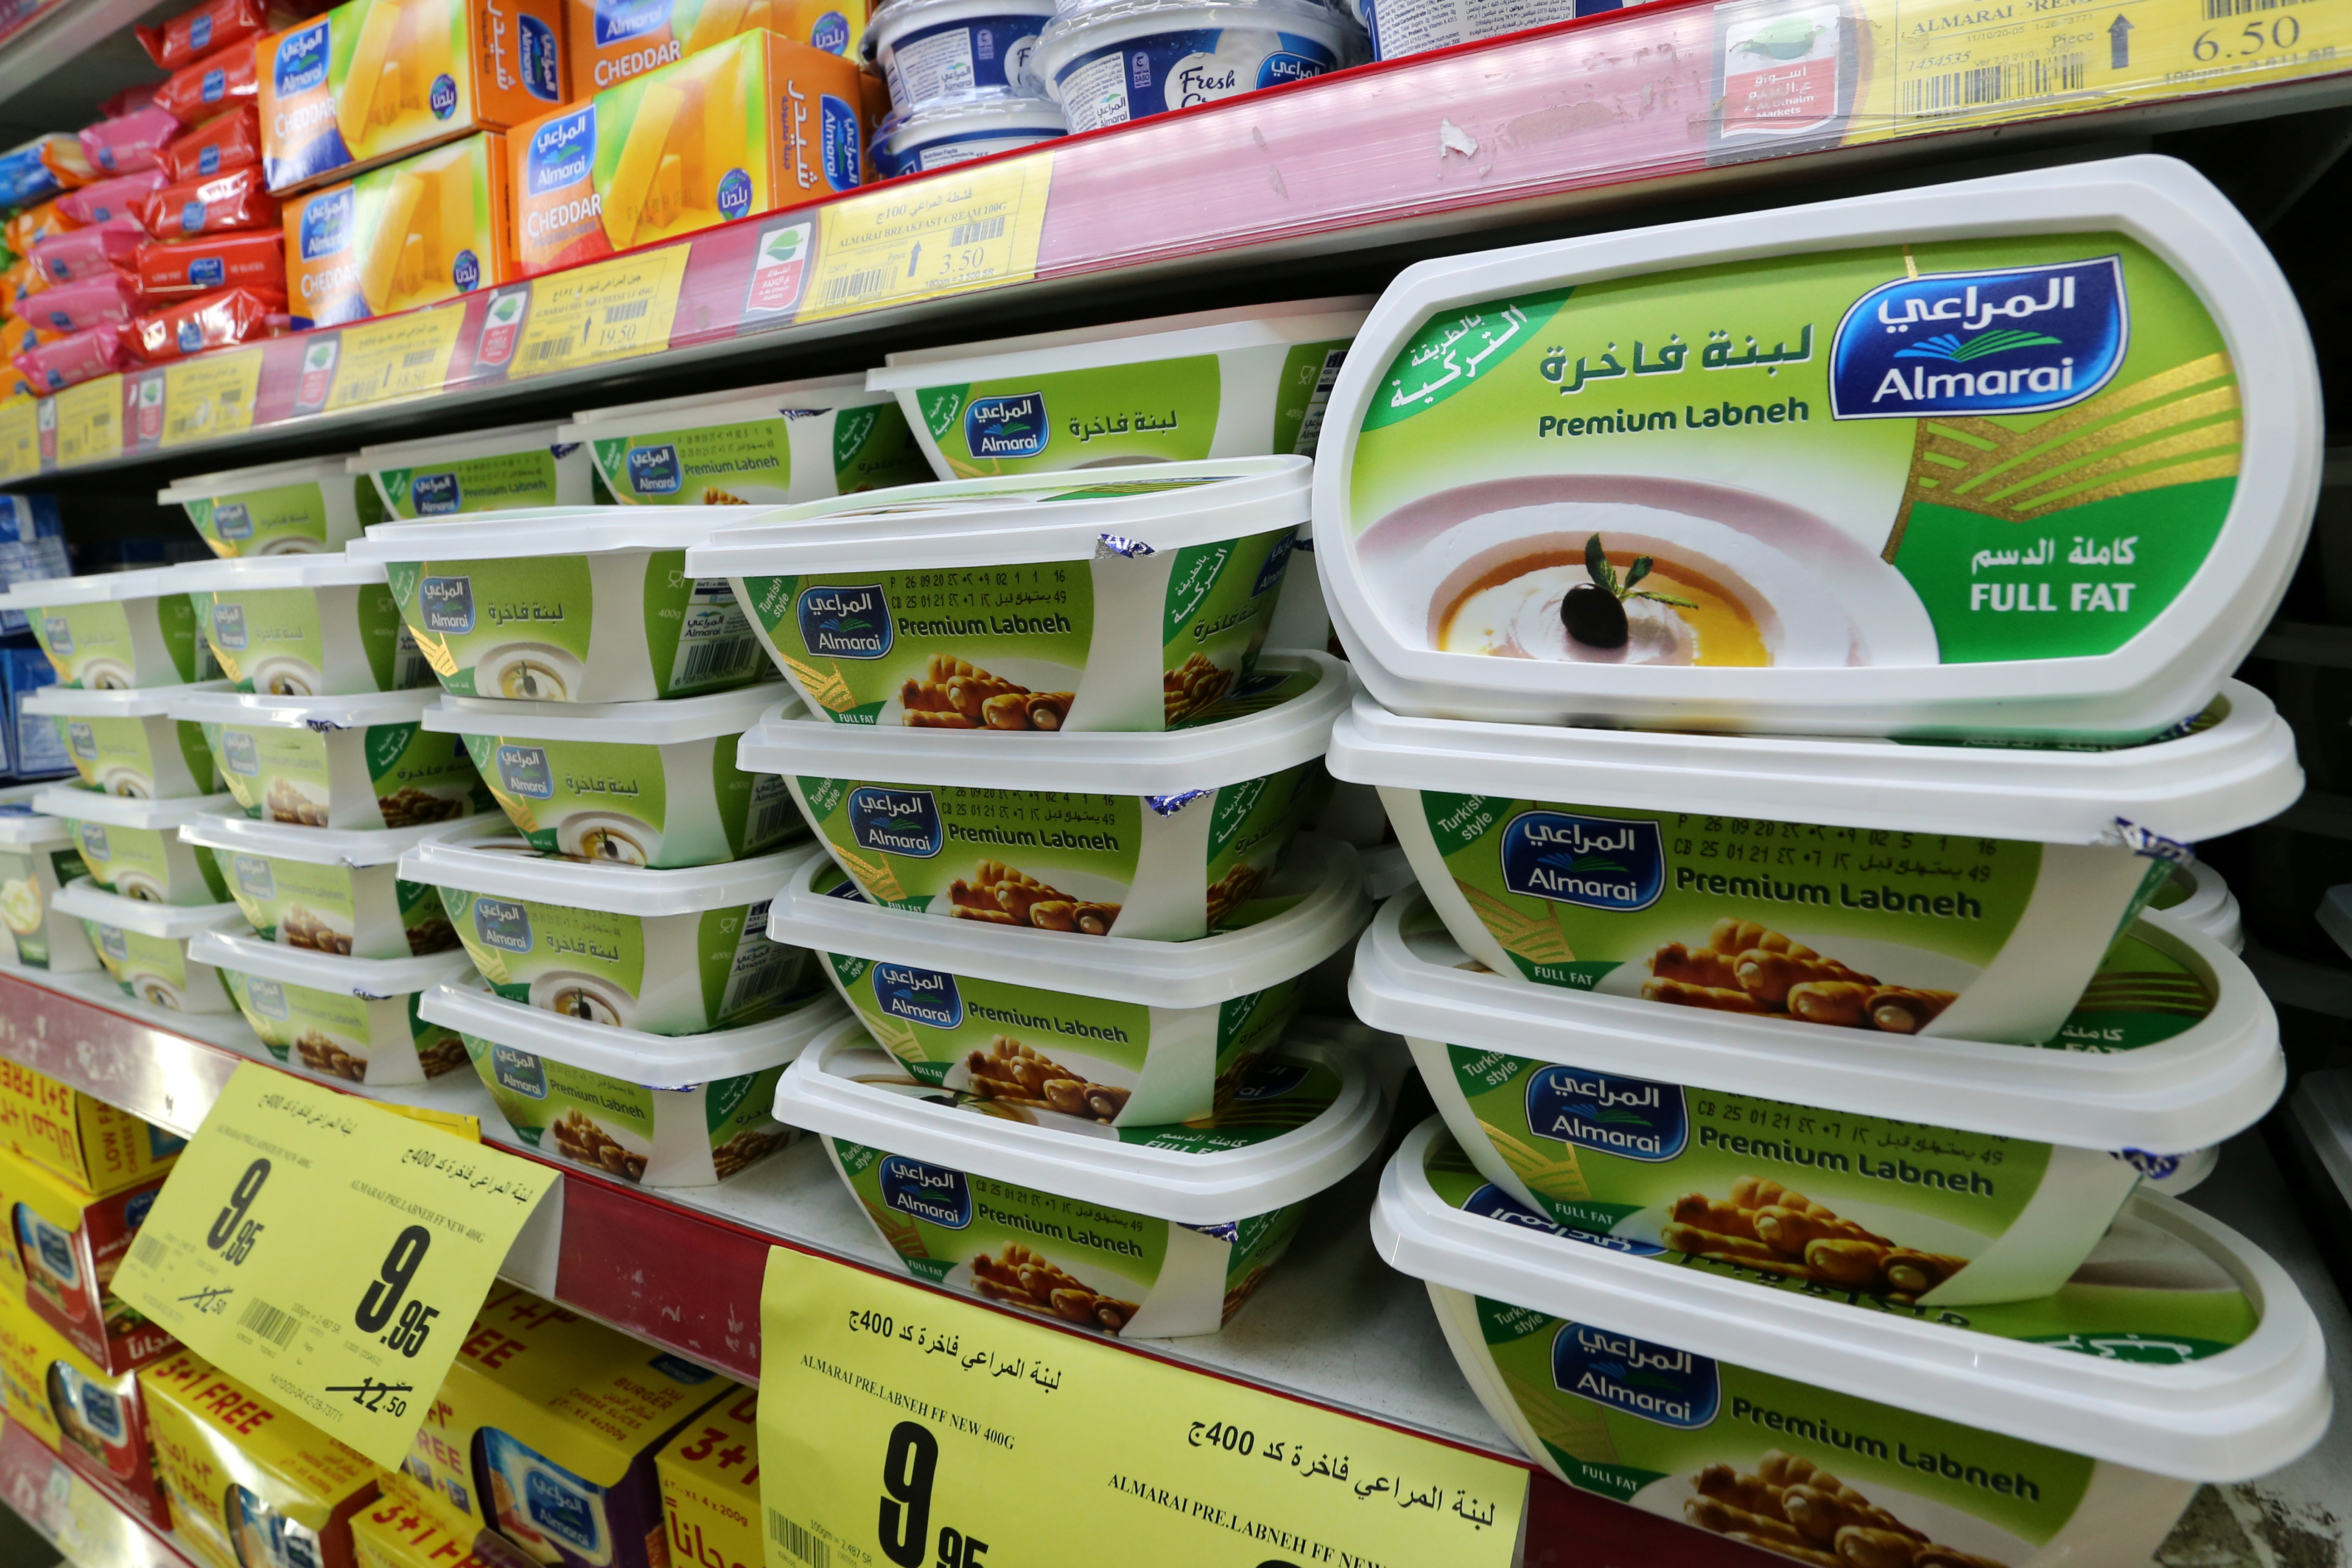 Saudi supermarkets urge customers to boycott Turkish products